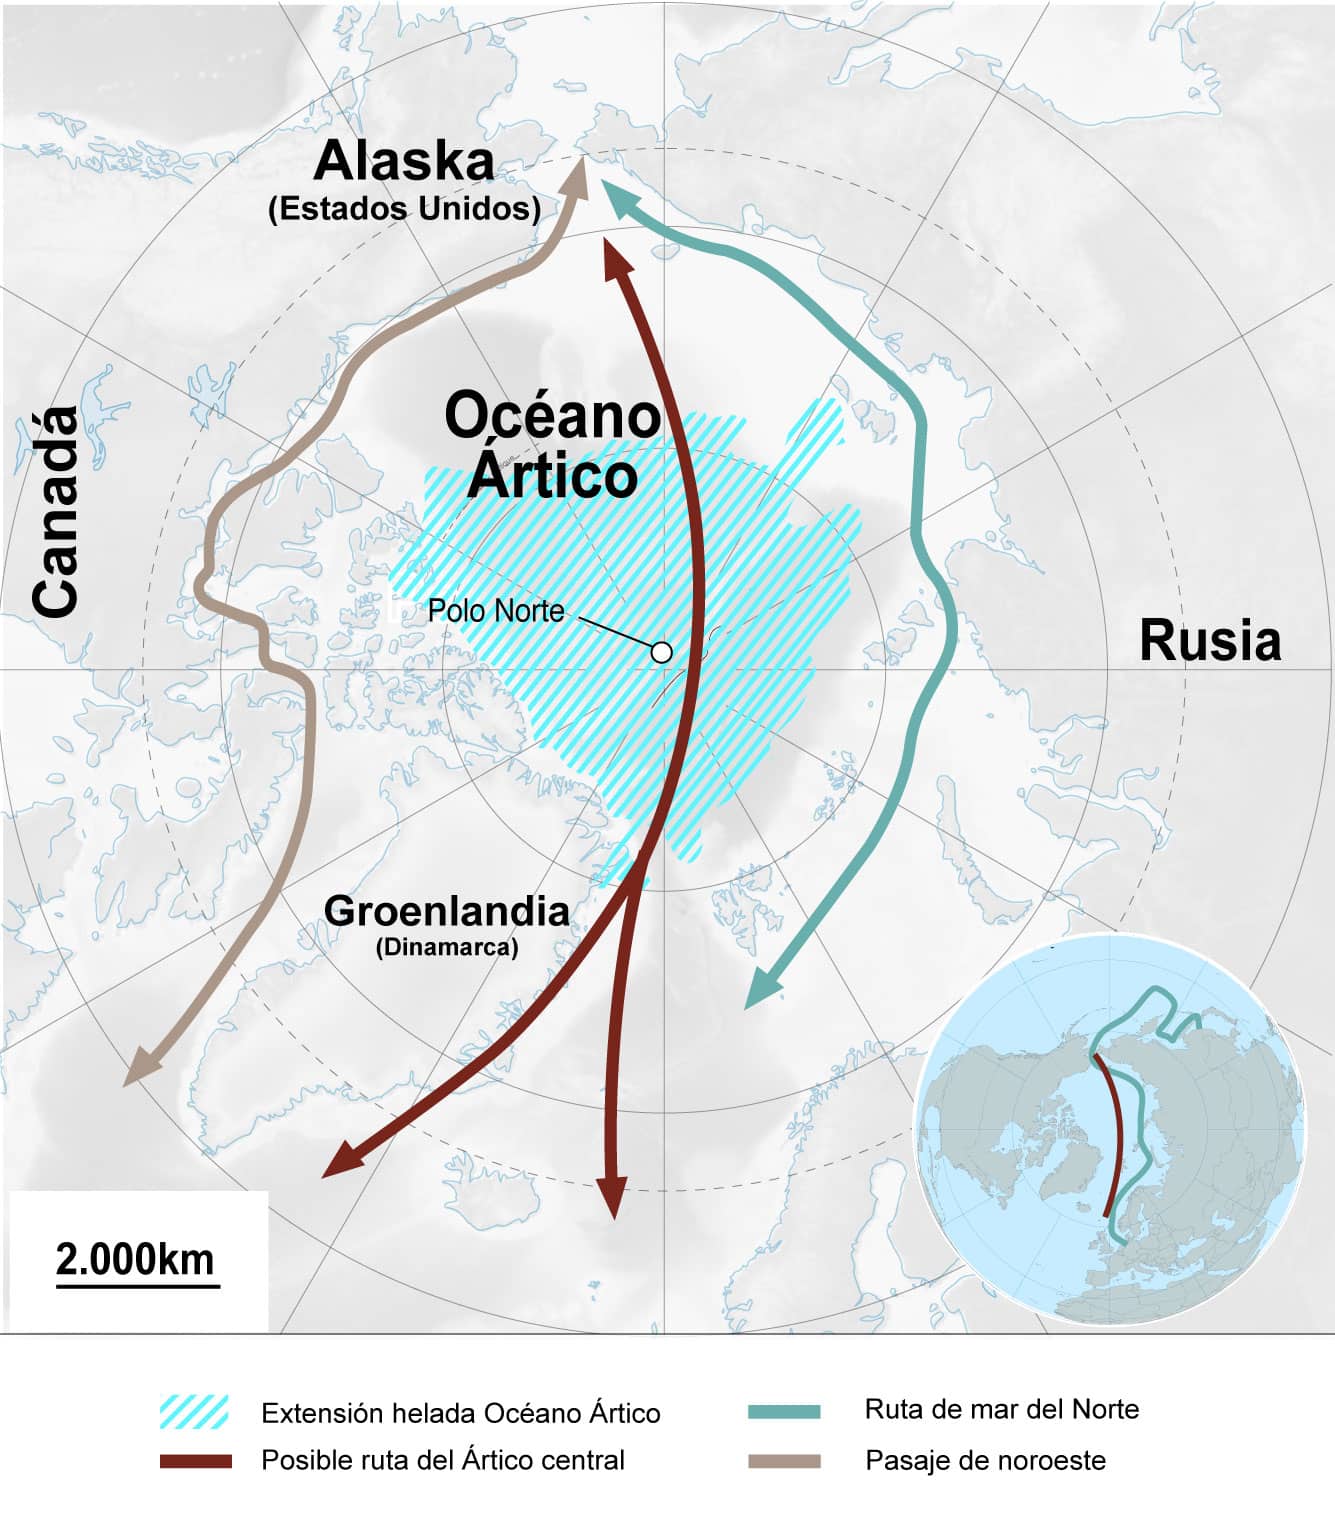 Cómo sería la posible ruta en el Ártico central con el deshielo